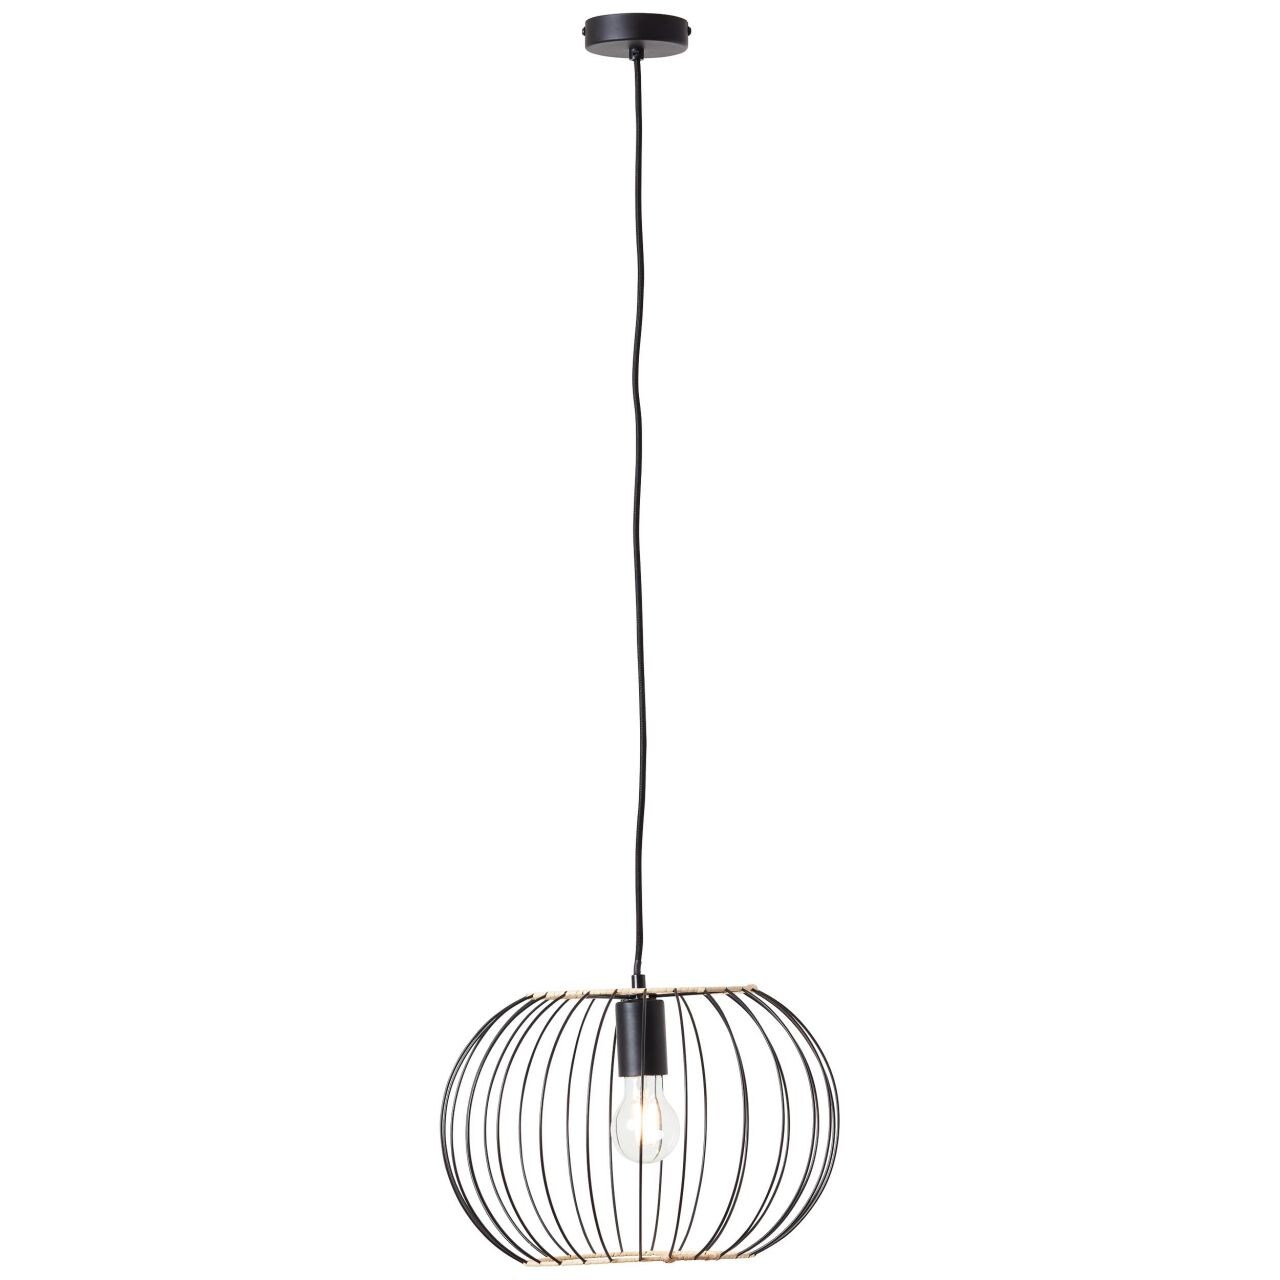 BRILLIANT Lampe, Silemia Pendelleuchte 1flg schwarz matt, 1x A60, E27, 52W, Kabel kürzbar / in der Höhe einstellbar